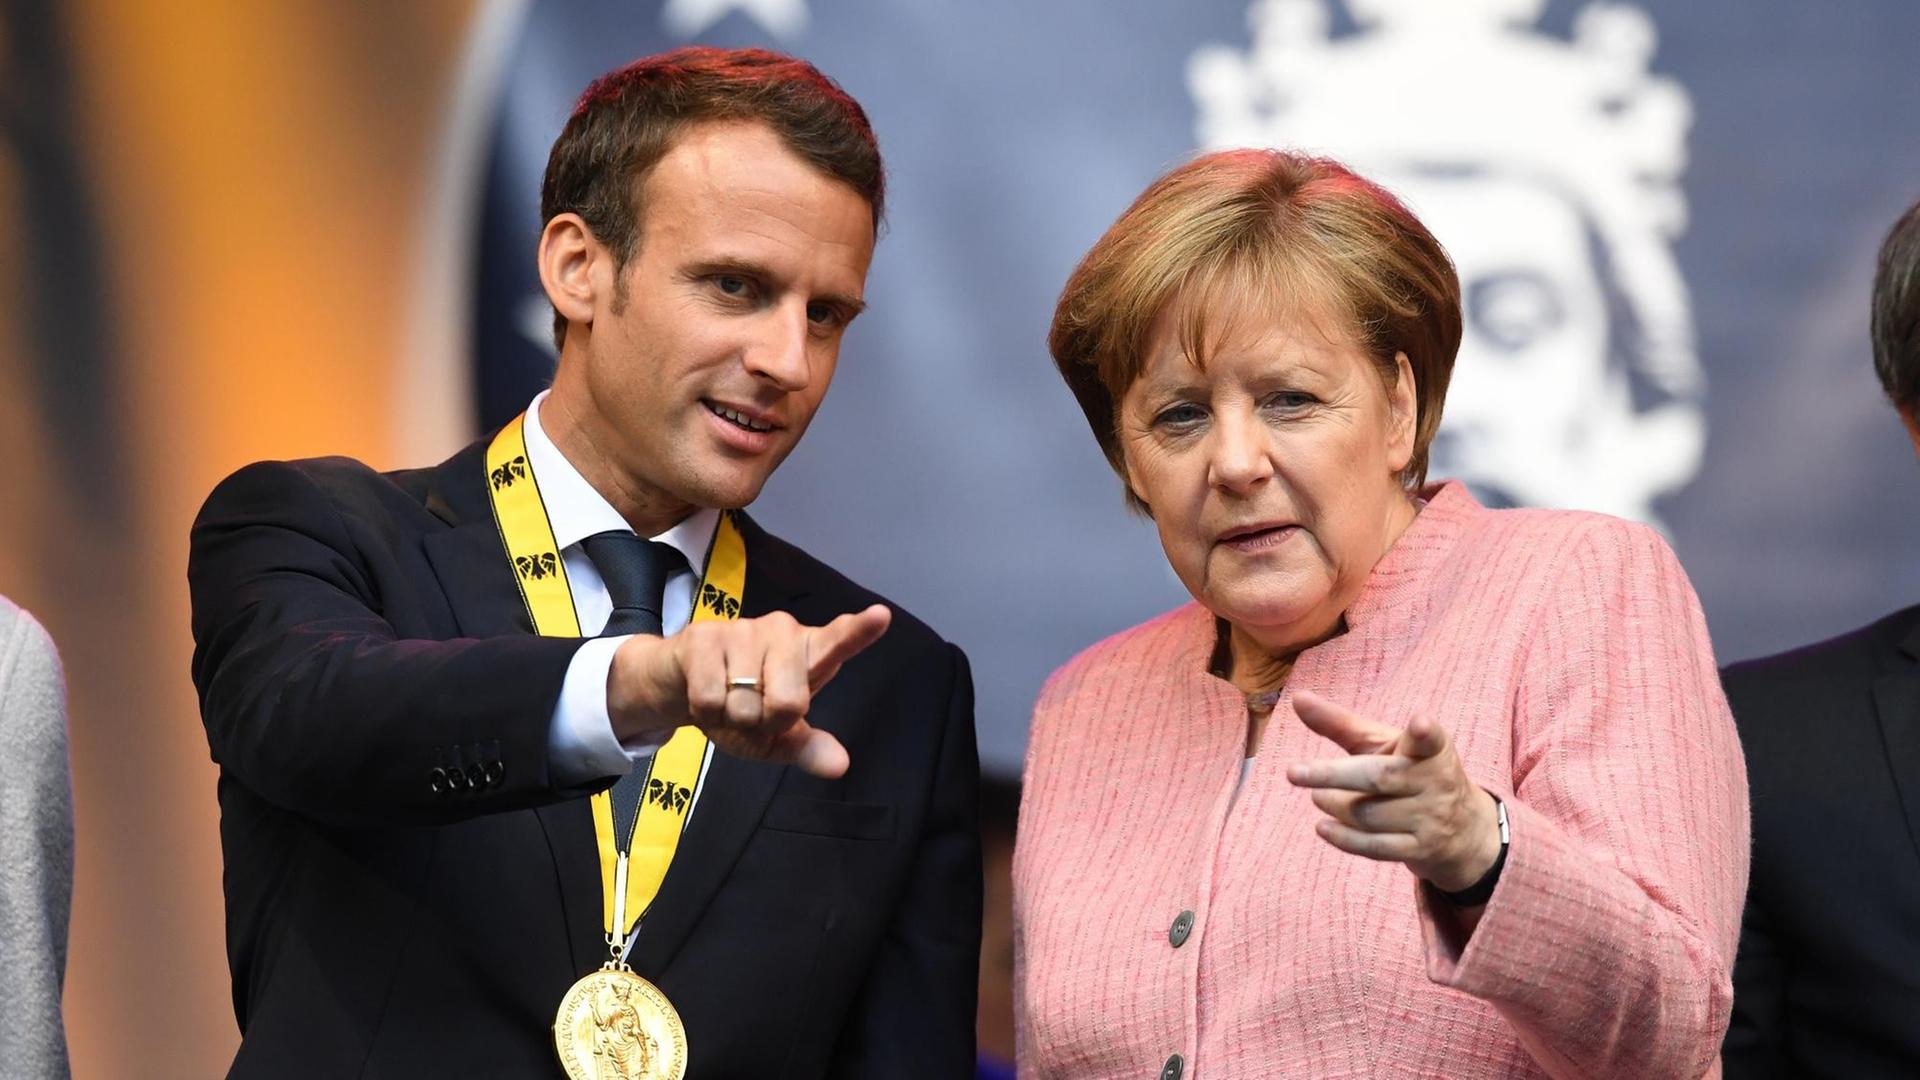 Bundeskanzlerin Angela Merkel (CDU), und der französische Staatspräsident Emmanuel Macron stehen nach der Verleihung des Karlspreises auf einer Tribüne.